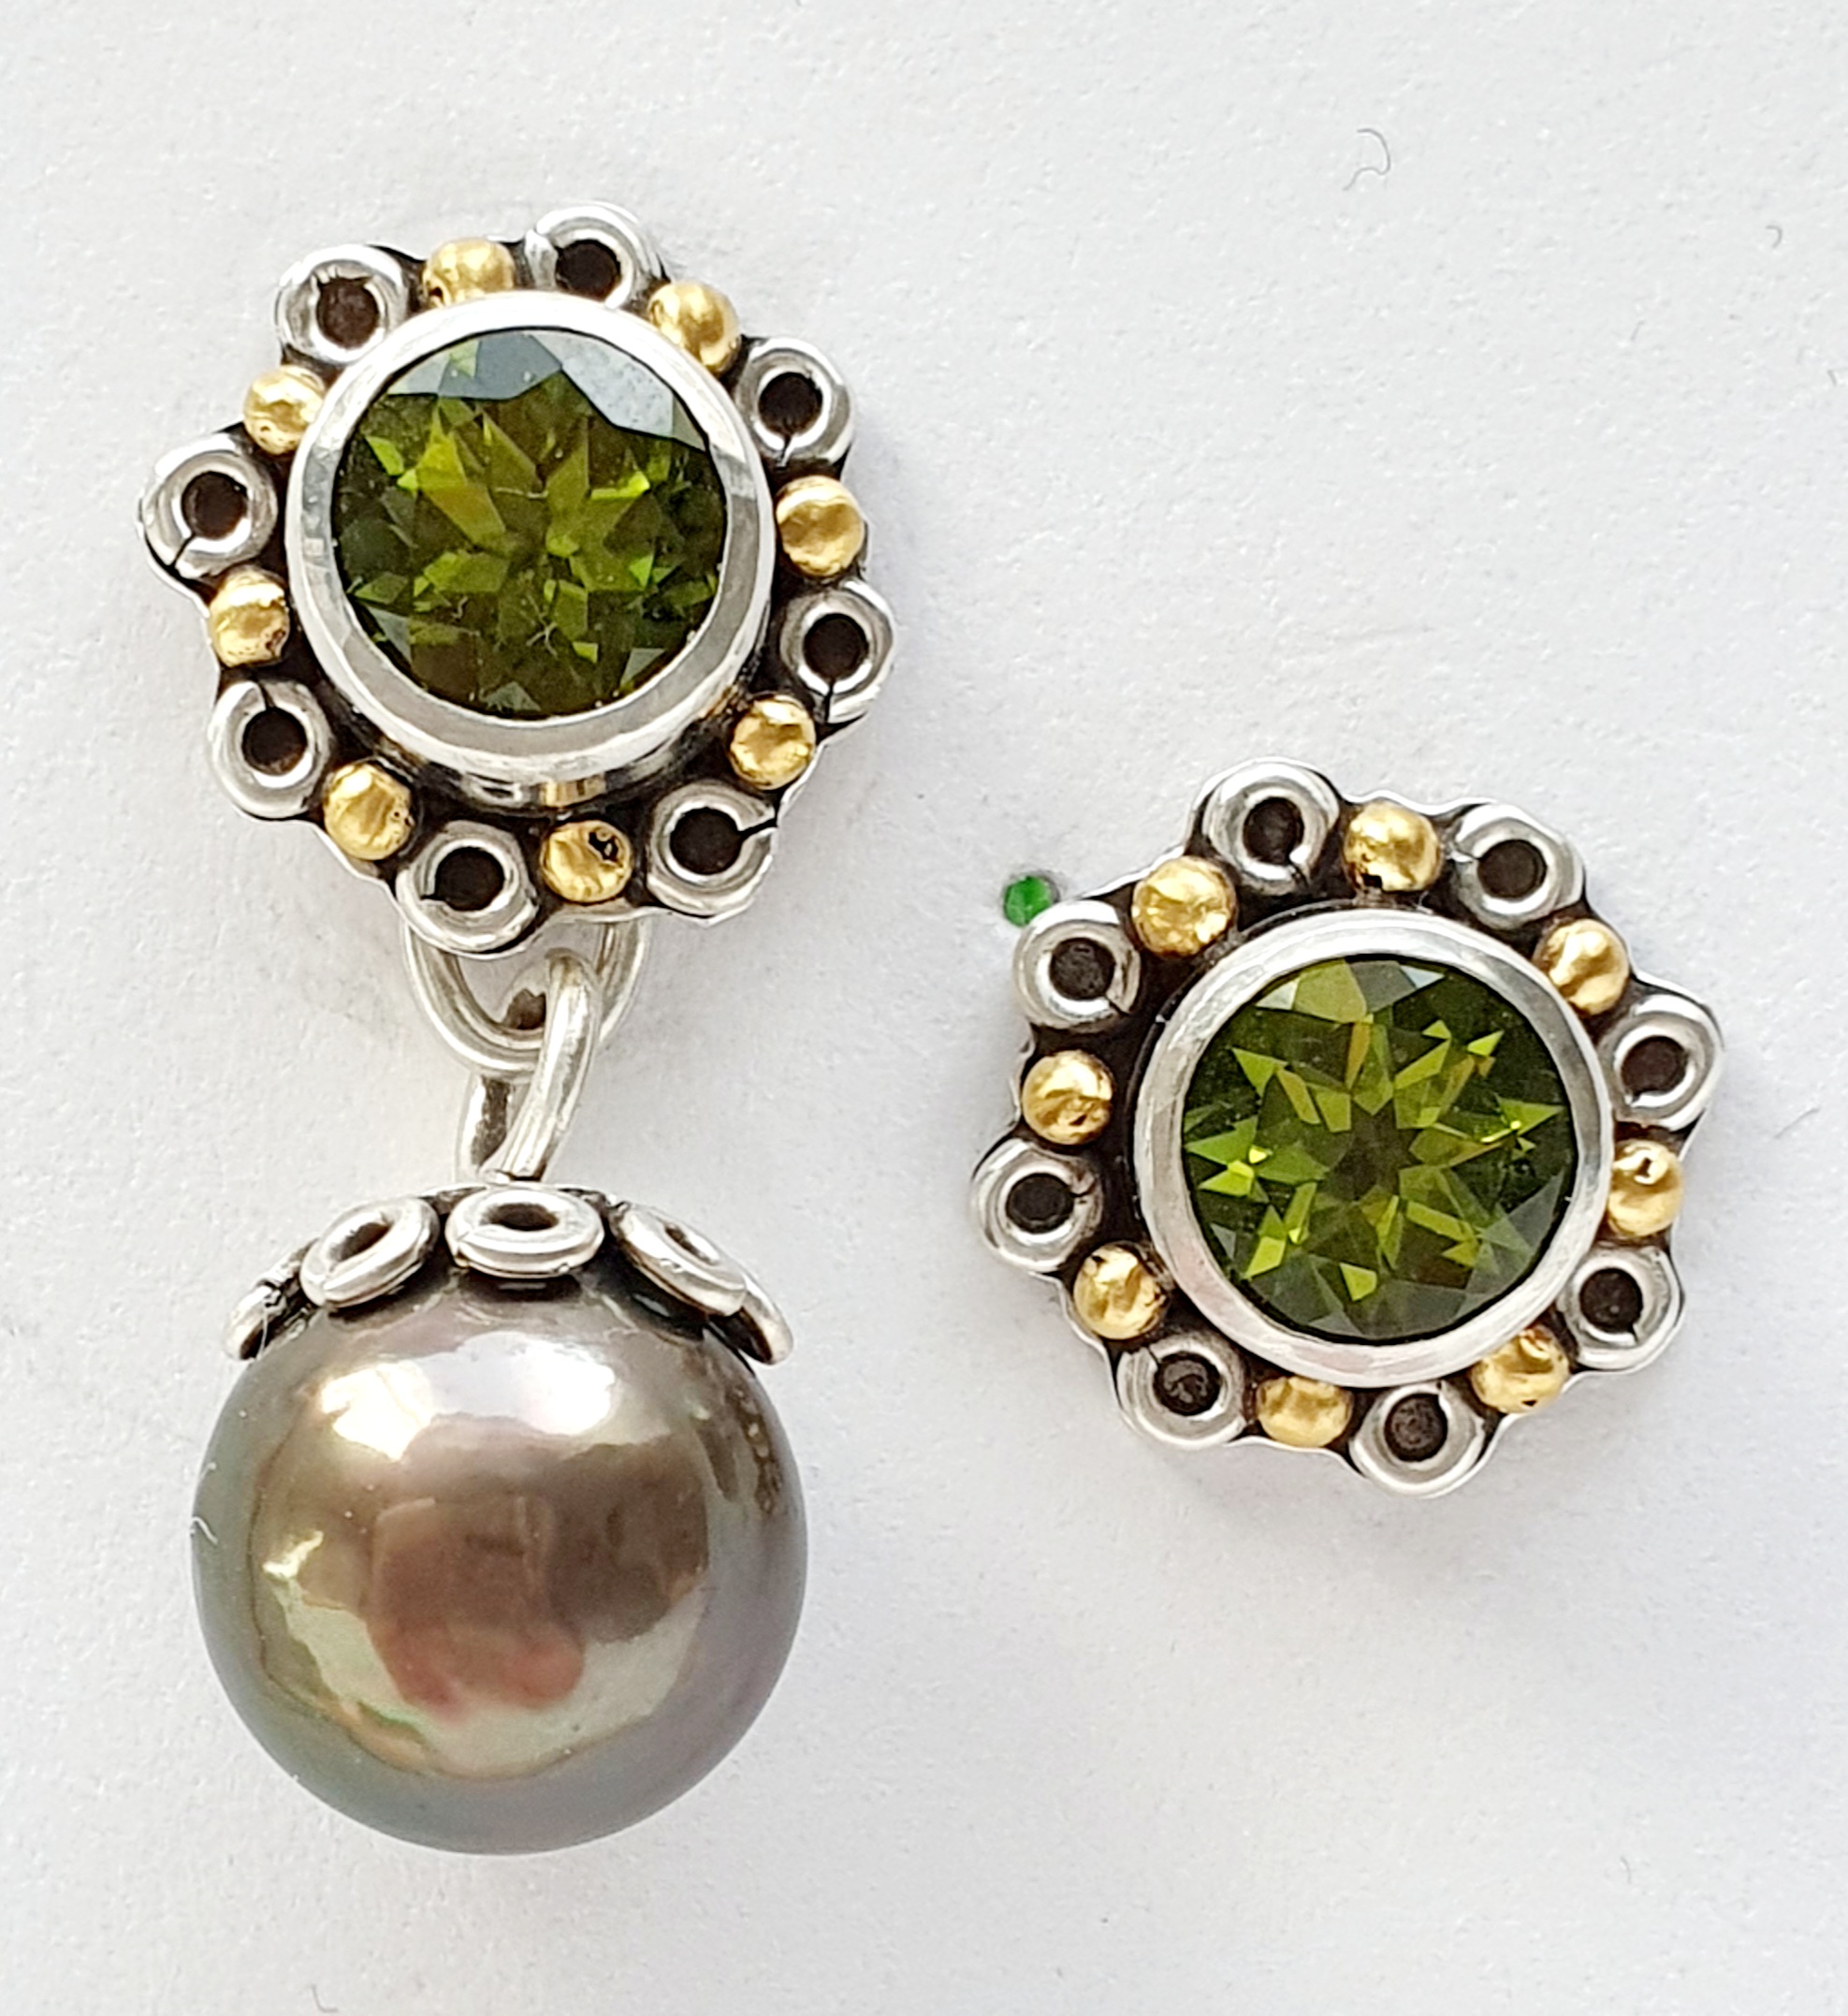 Peridot grün in Silber 925 gefasst und granuliert, Perlenanhänger grün mit Oesenhut